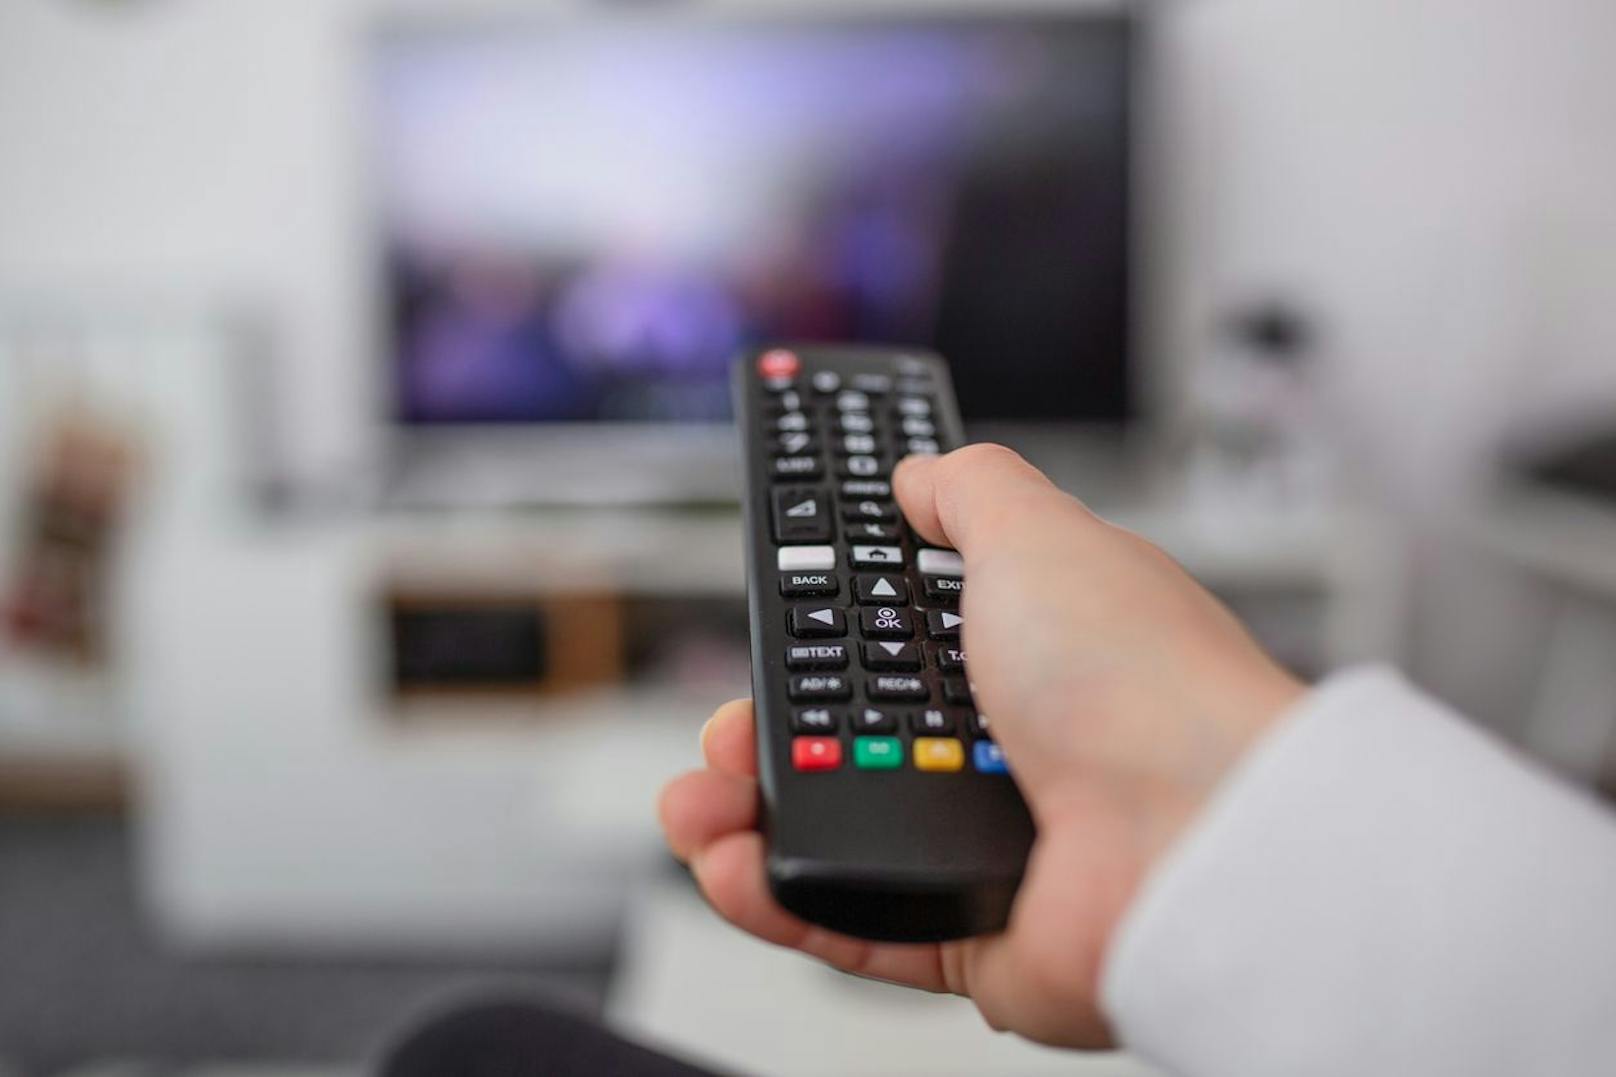 Füße hoch, Fernsehen an: Der Fernseher ist das beliebteste Mittel, um dem Alltag zu entfliehen.